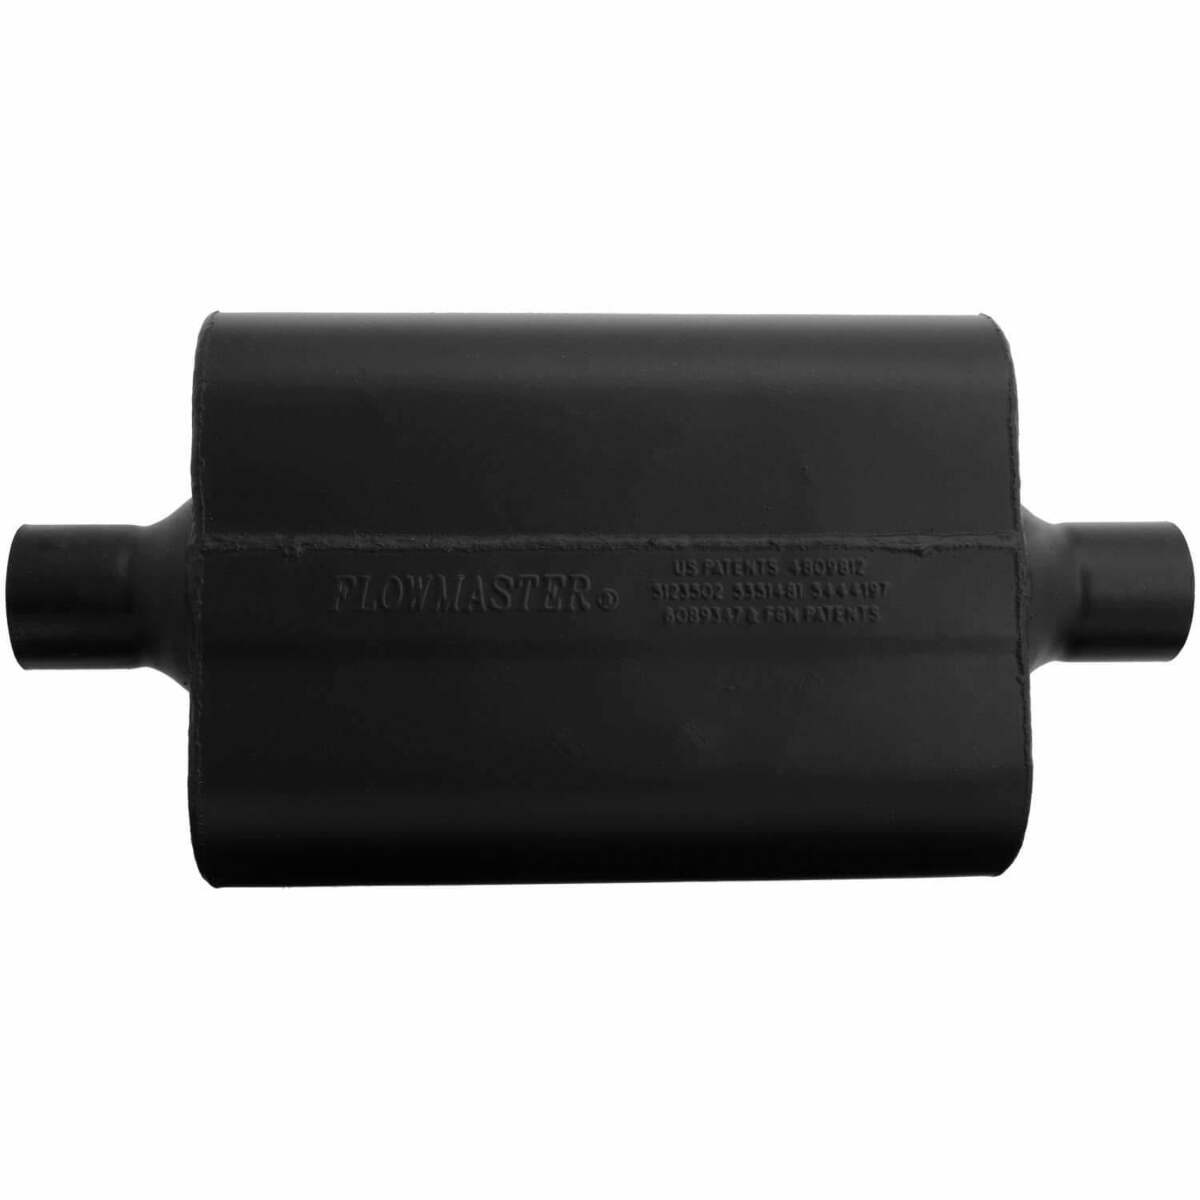 Flowmaster Super 44 Series Chambered Muffler 942445